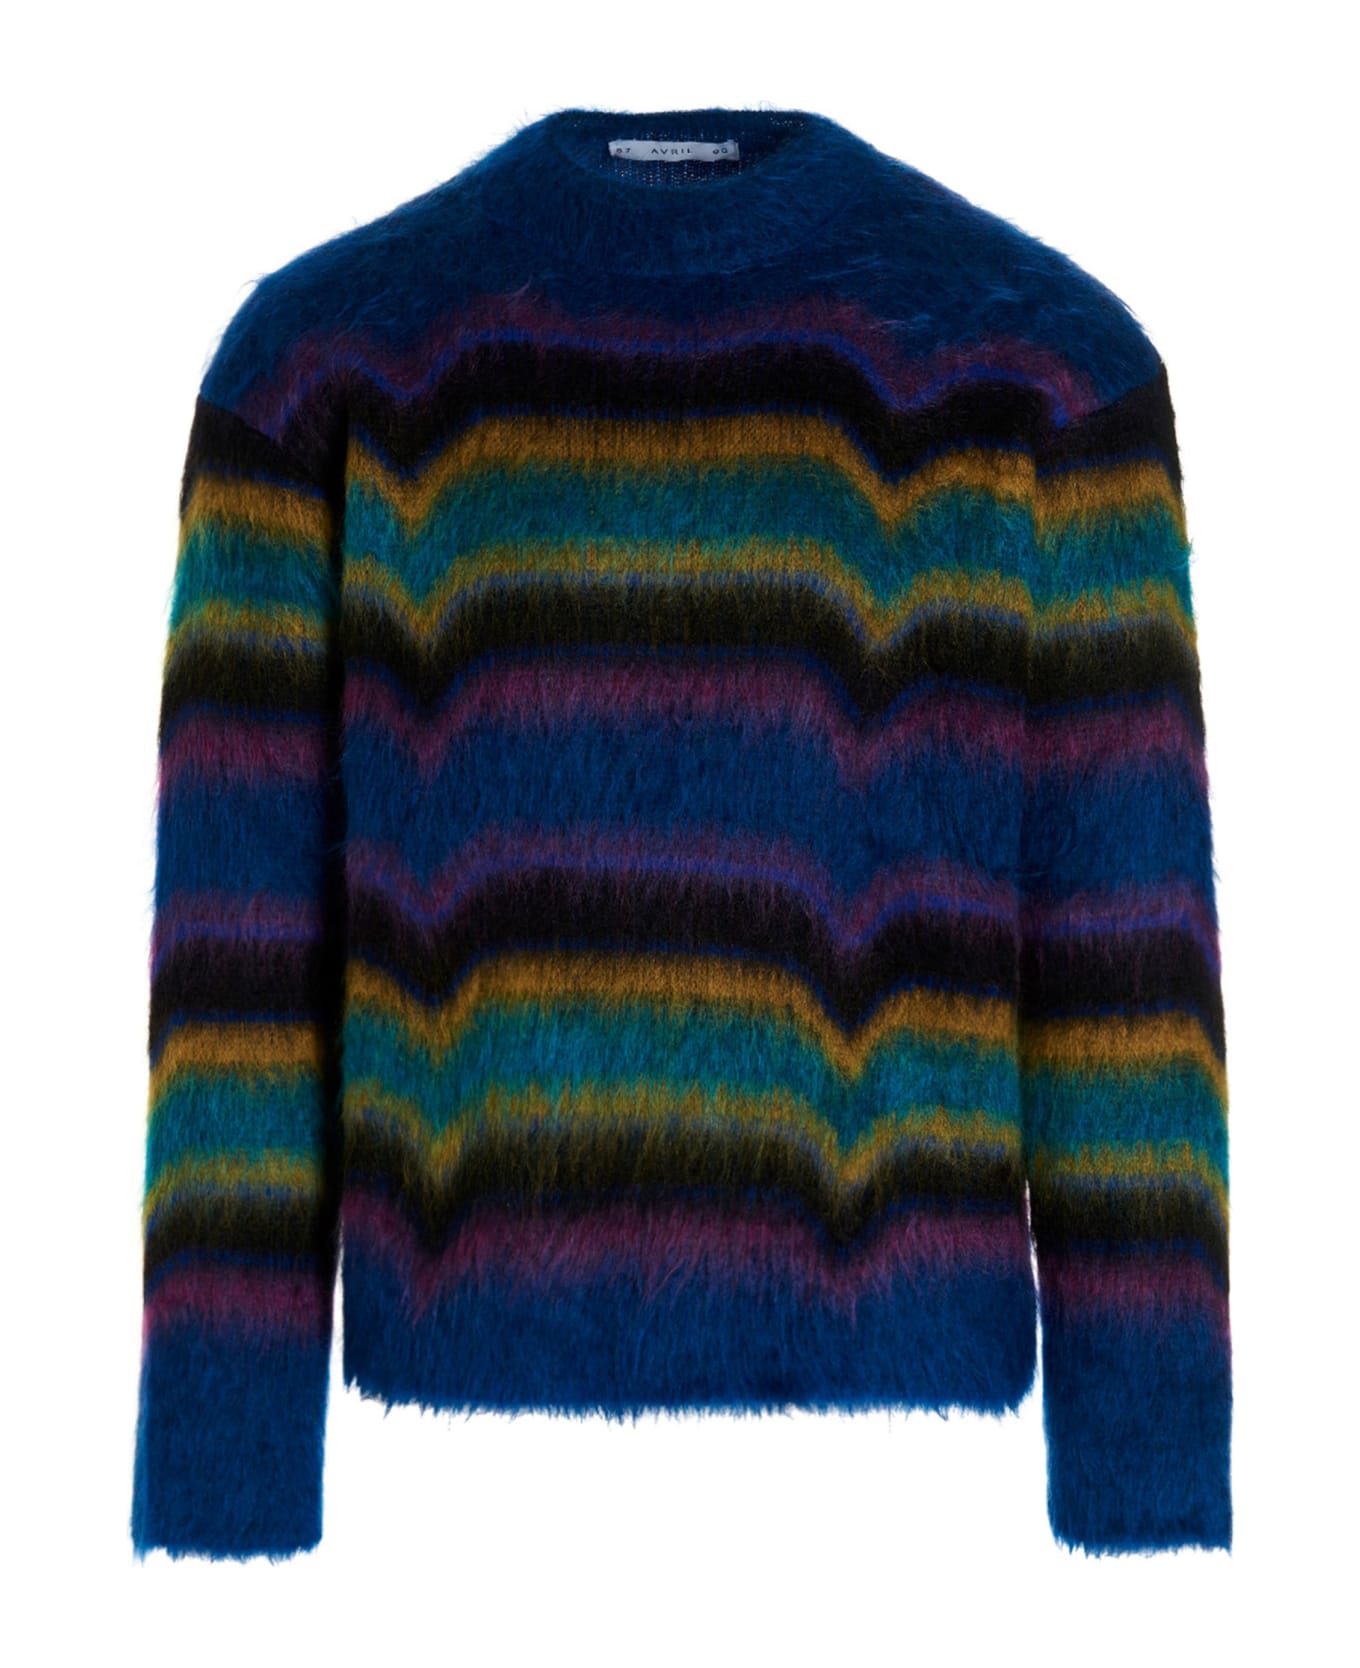 Avril8790 'skateboard' Sweater - Multicolor ニットウェア